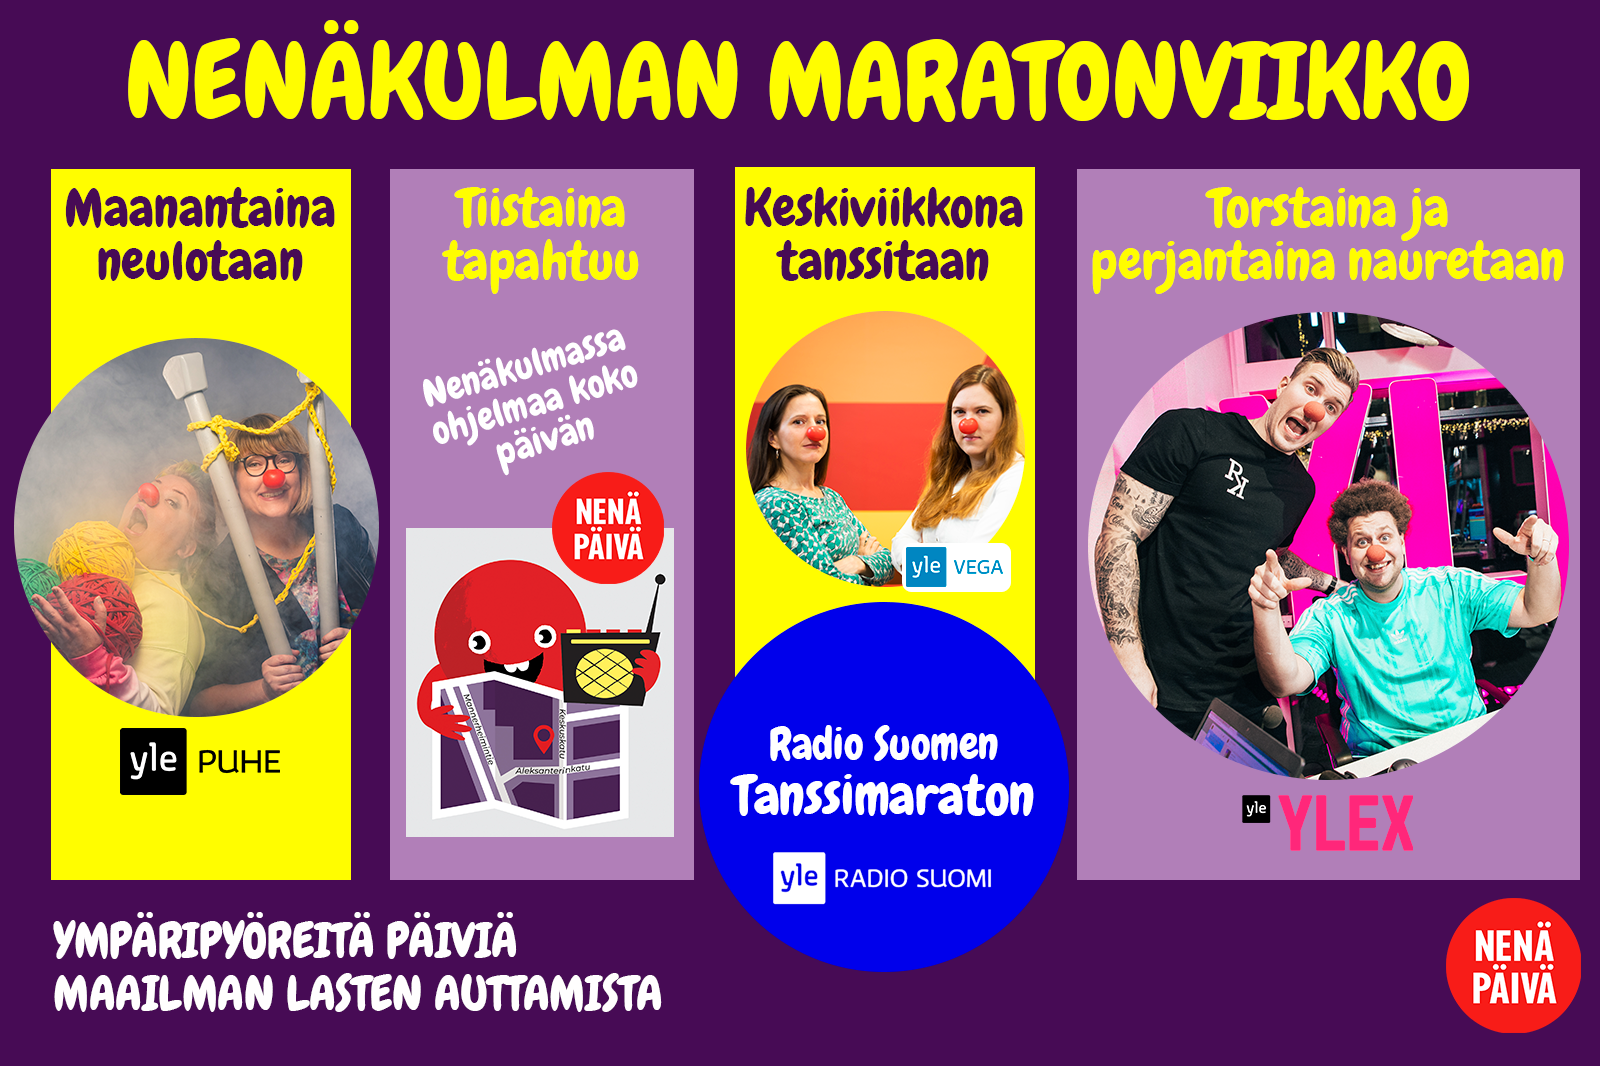 NP_maratonviikko_isompi